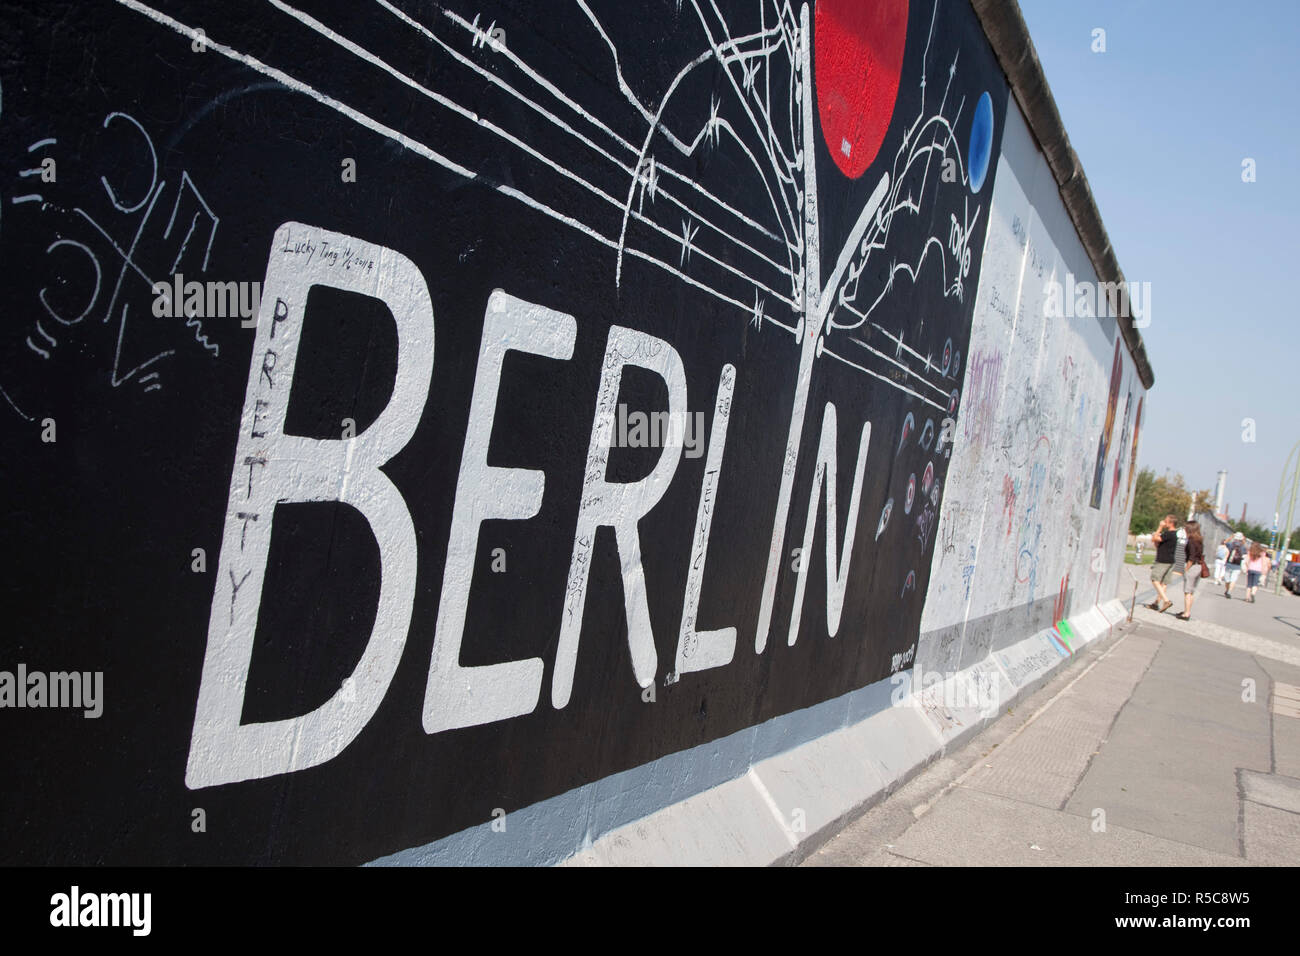 Eastside gallery (Berlin Wall), Muhlenstrasse, Berlin, Germany Stock Photo